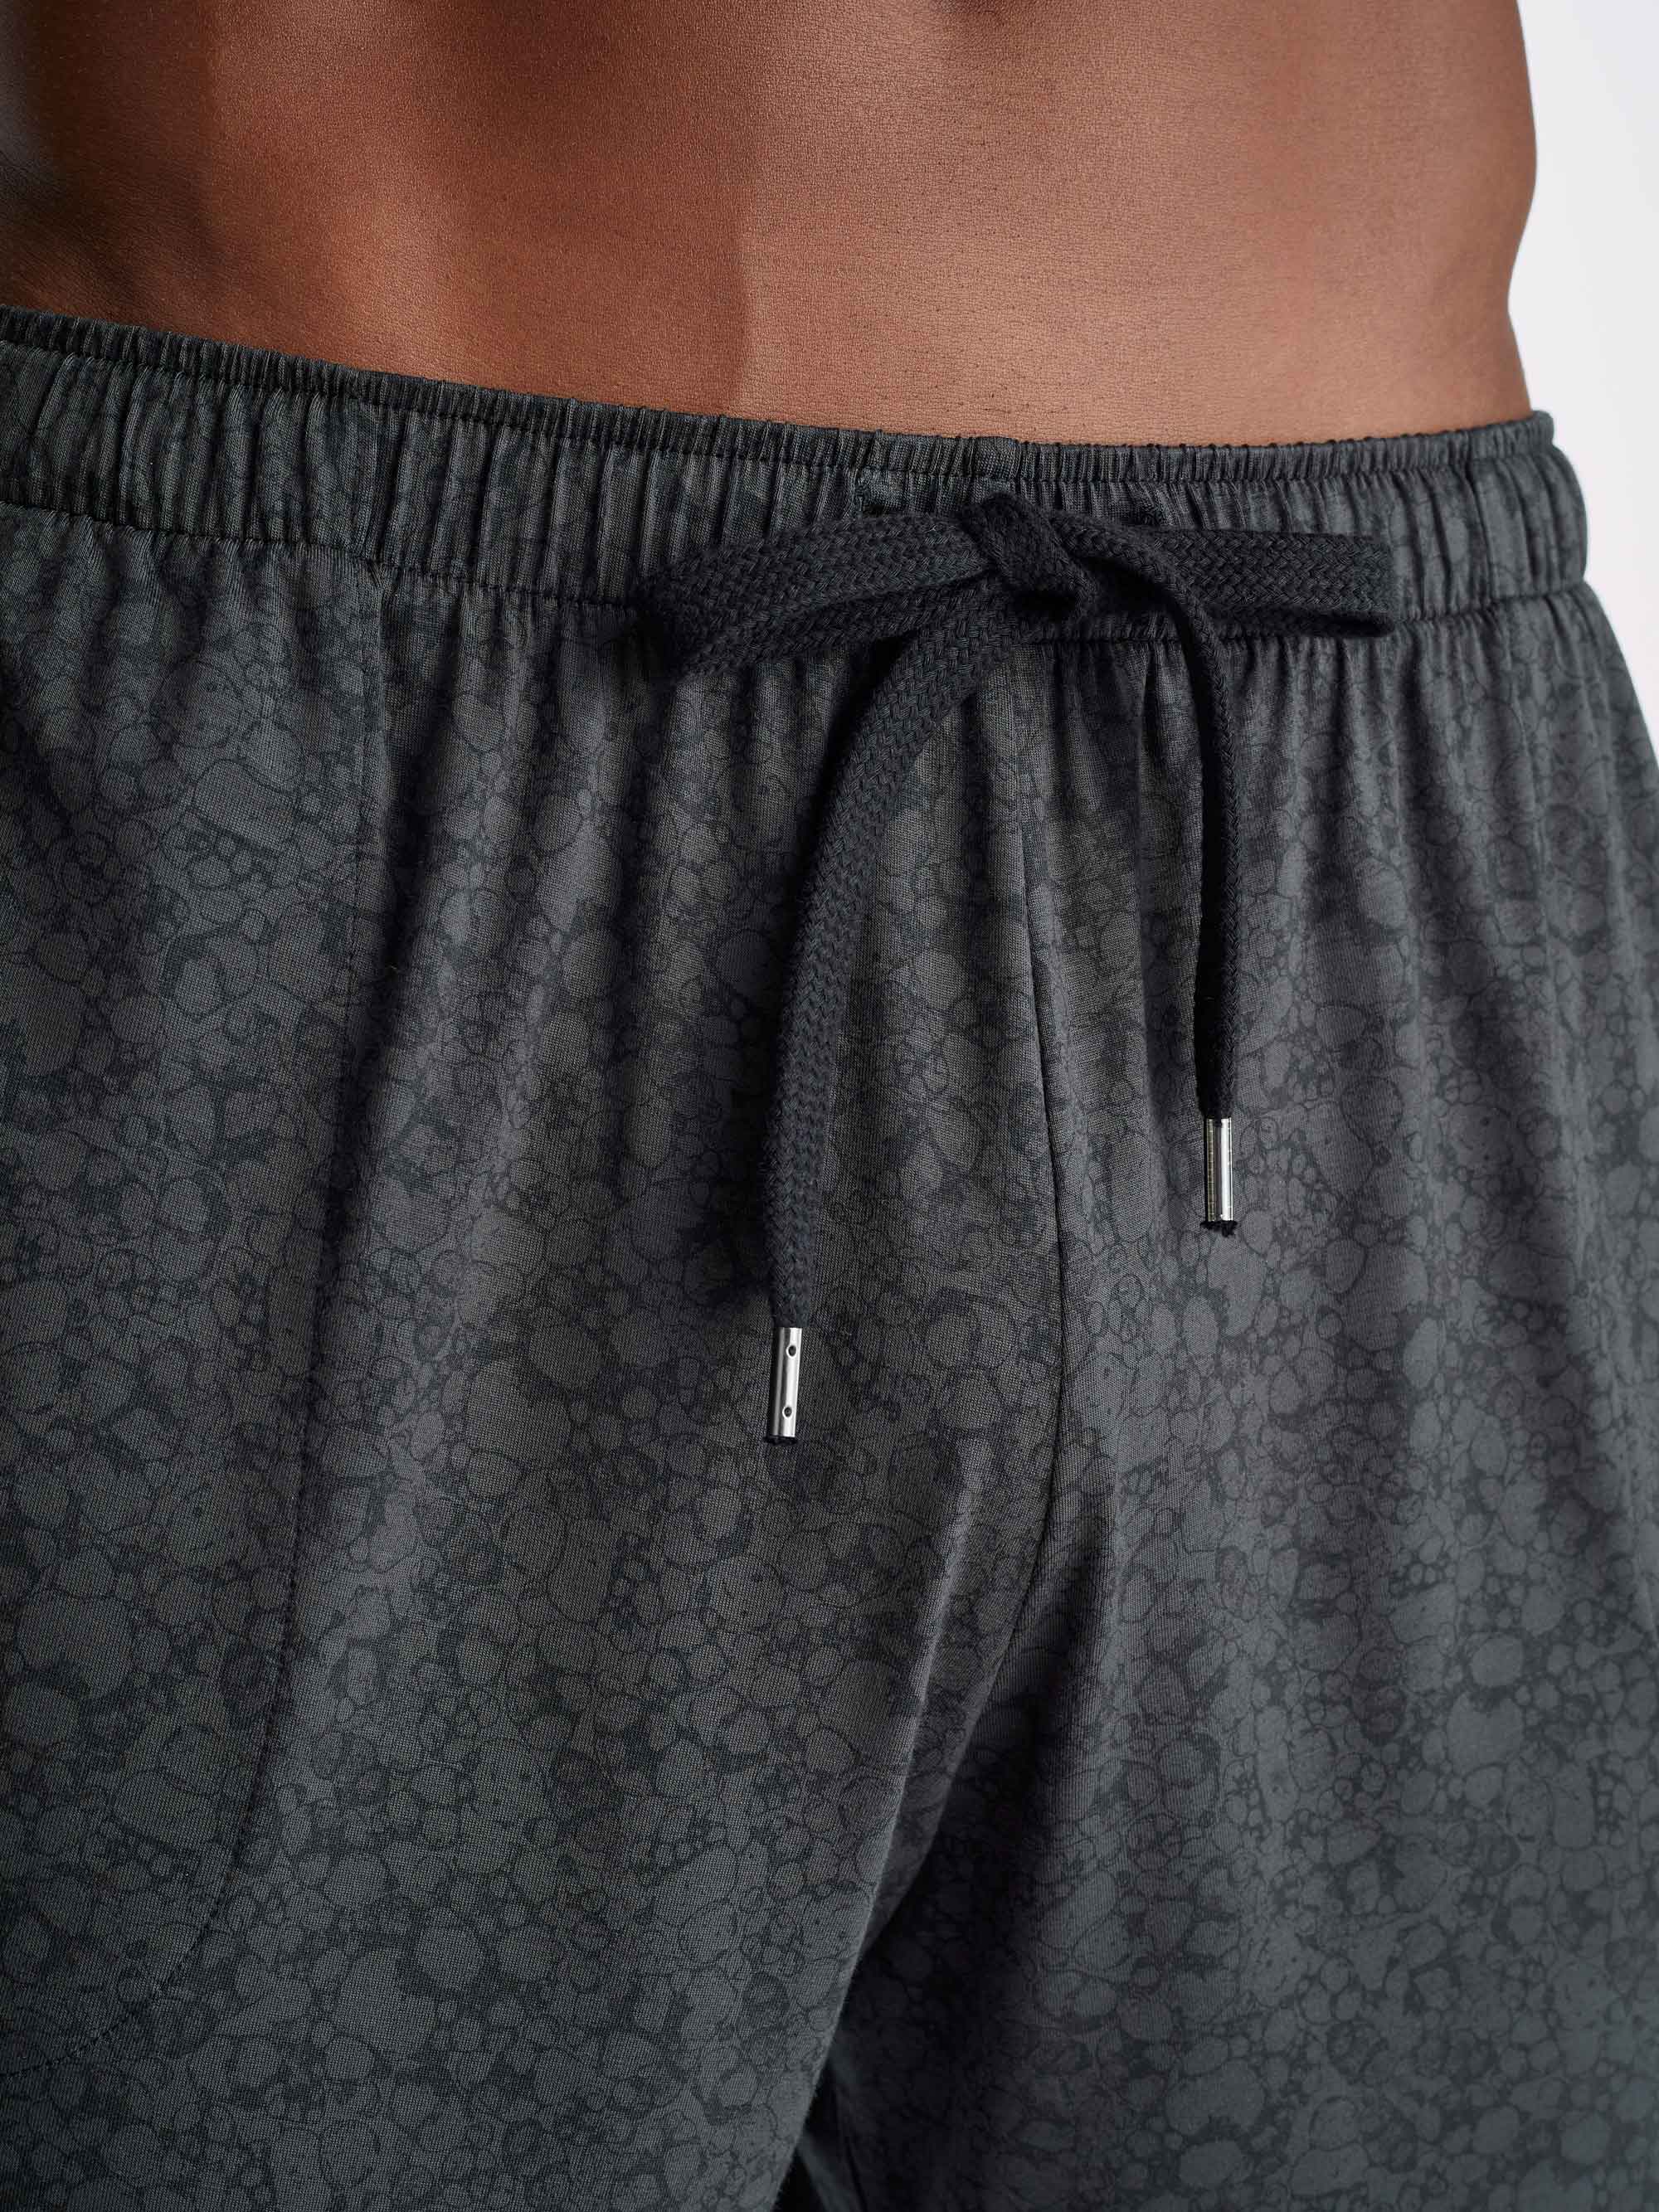 Men's Lounge Shorts London 10 Micro Modal Black